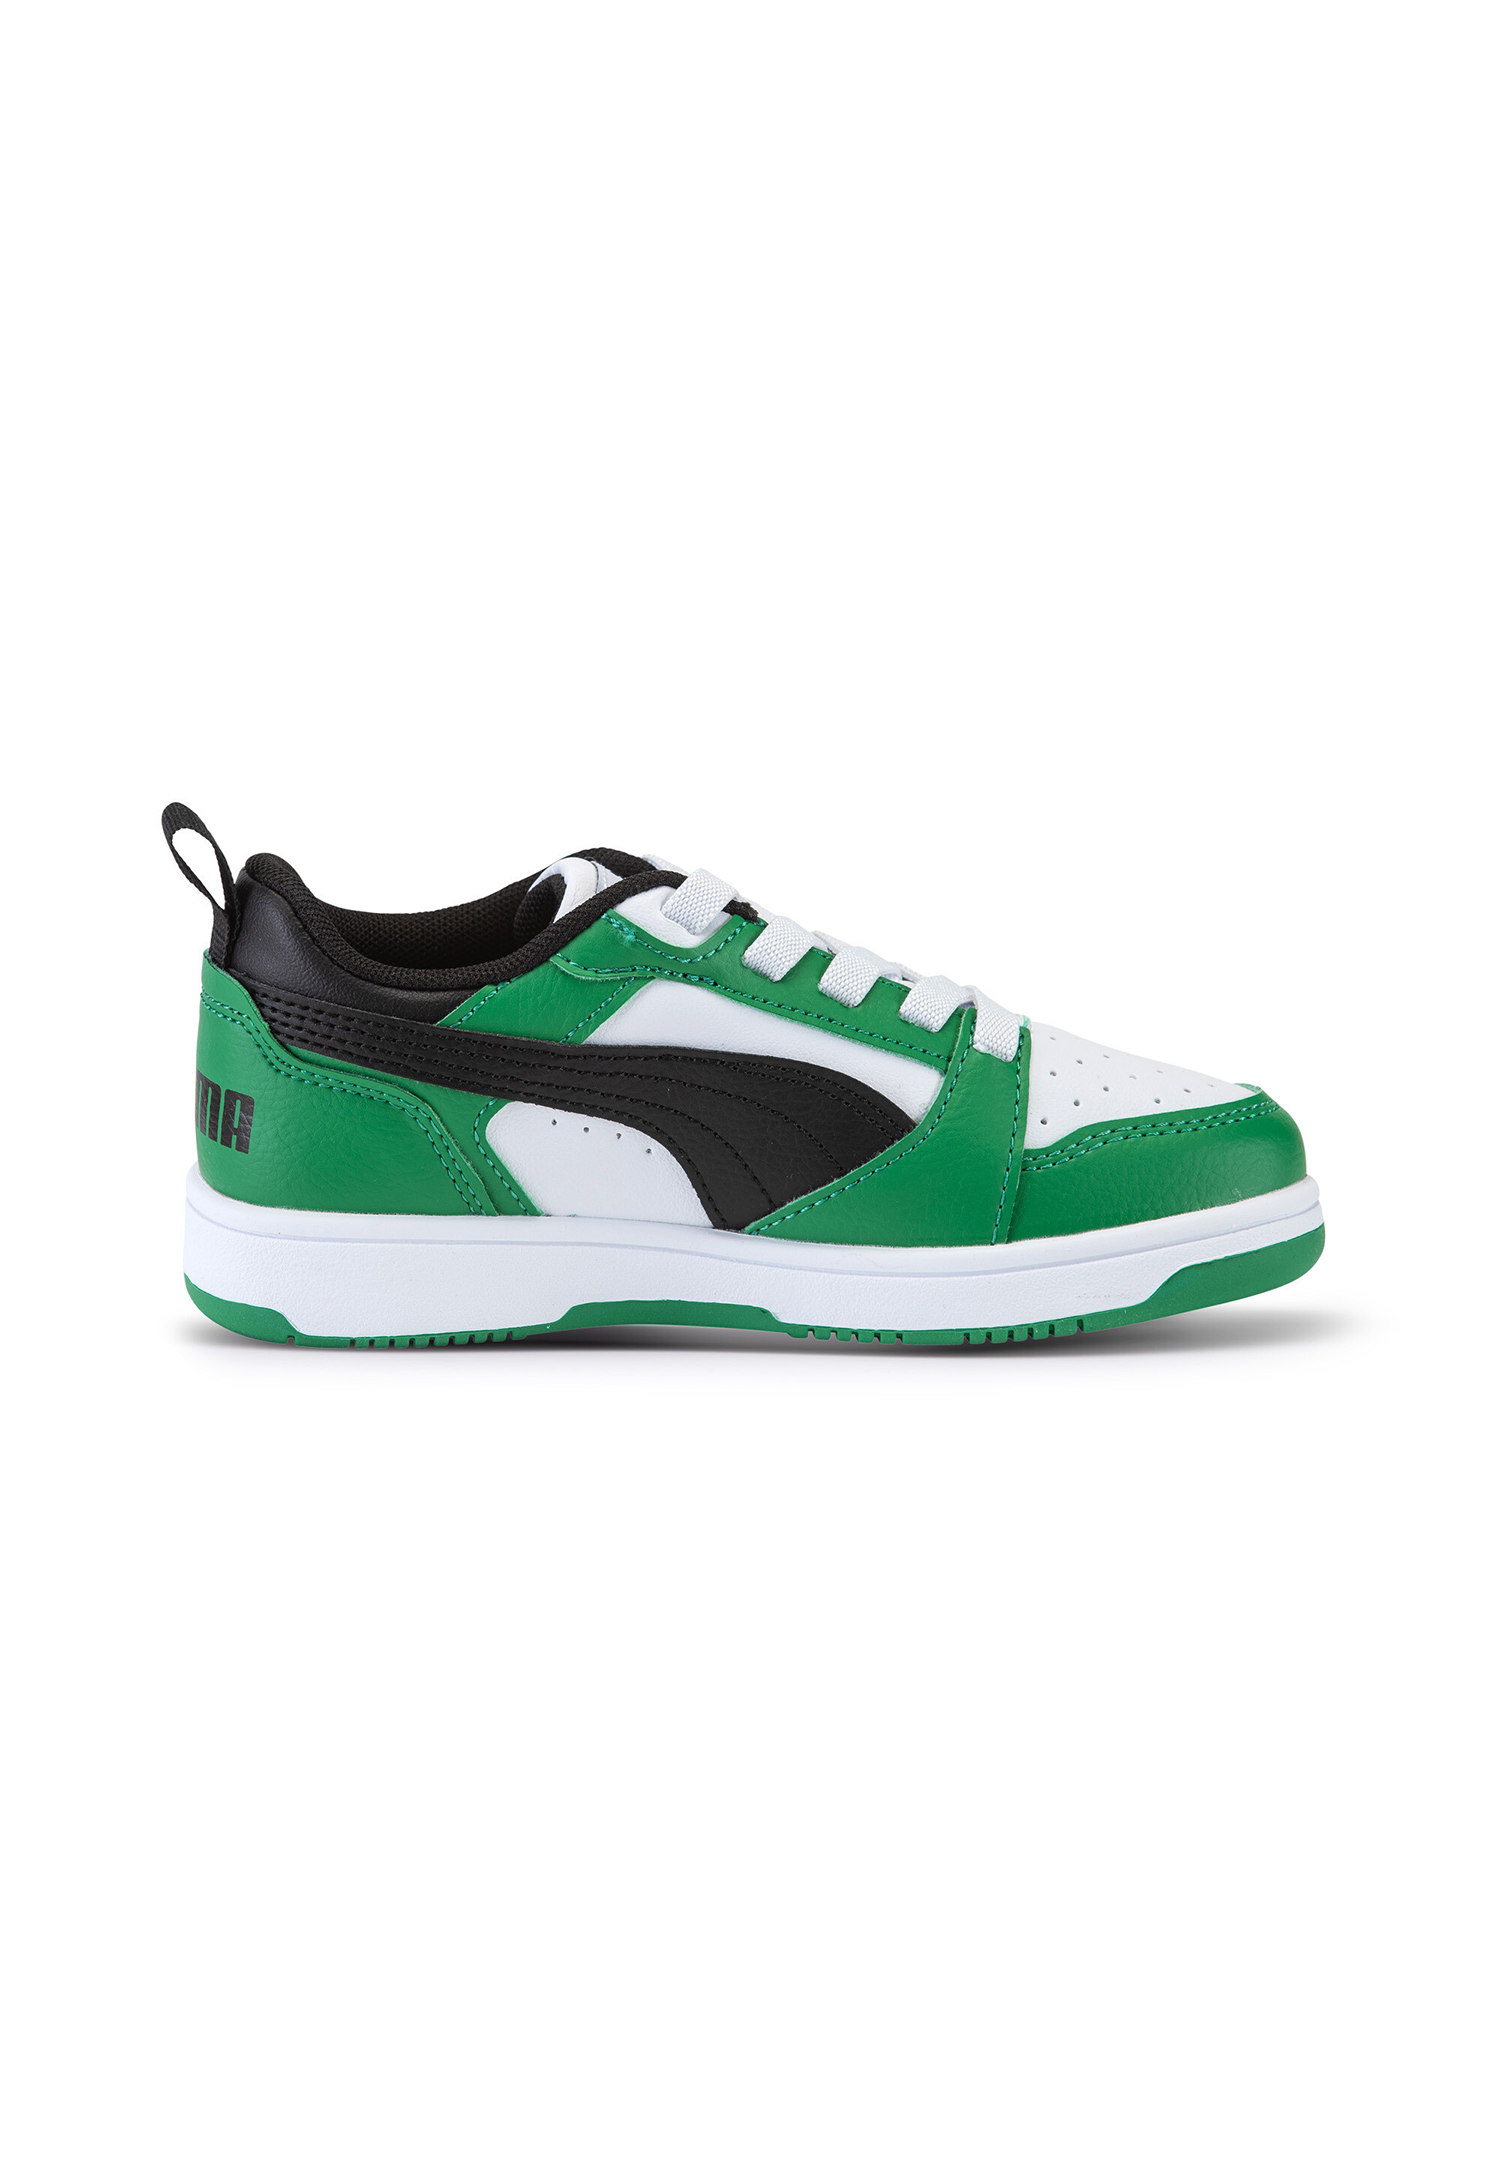 Puma Rebound V6 Lo AC PS Unisex Kinder Sneaker 396742 05 weiß/schwarz/grün 